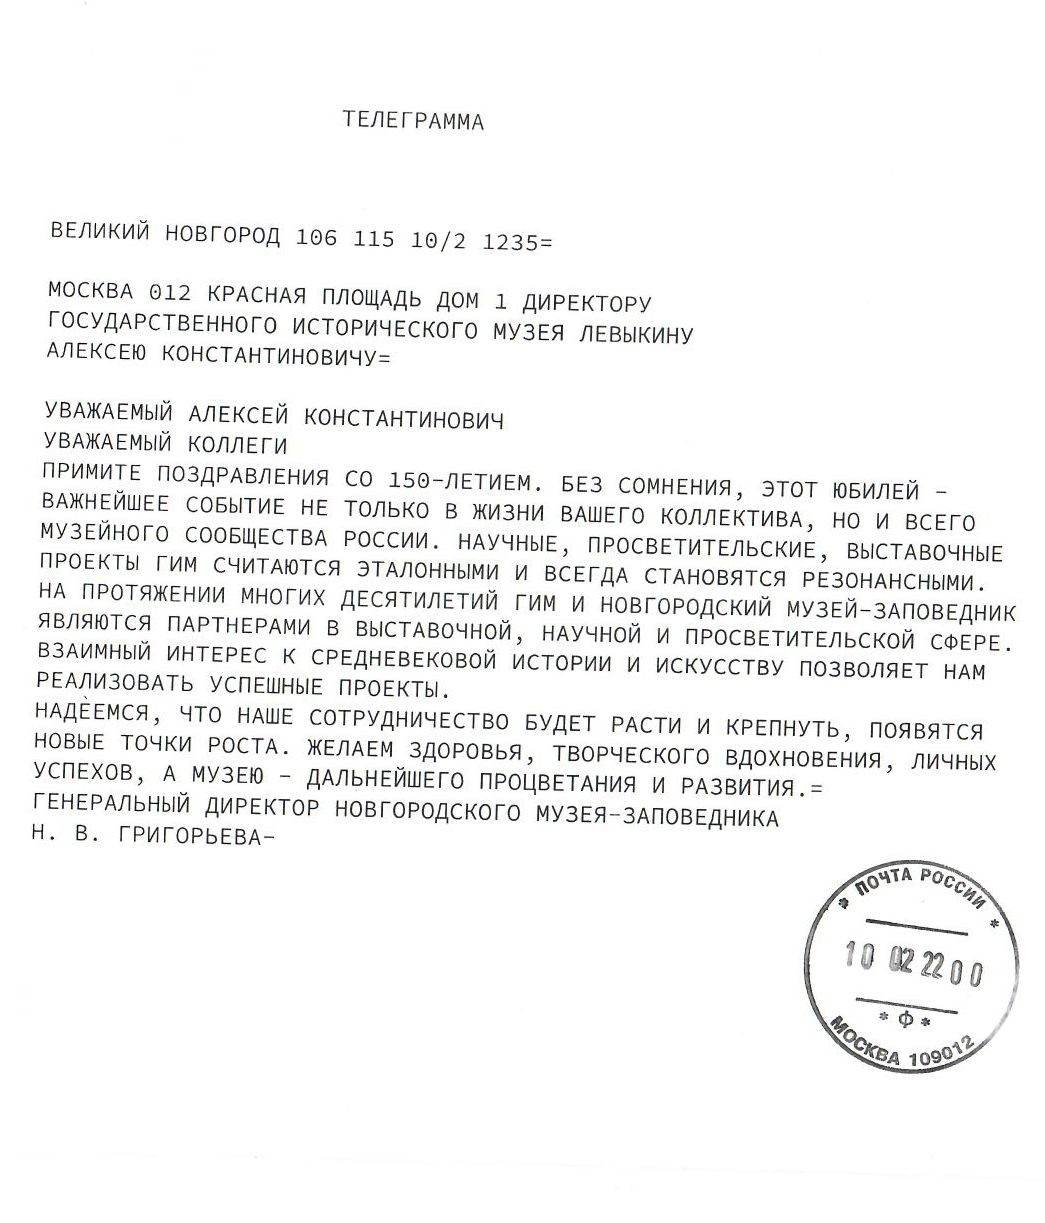 Телеграмма от генерального директора Новгородского музея-заповедника Григорьевой Н. В.